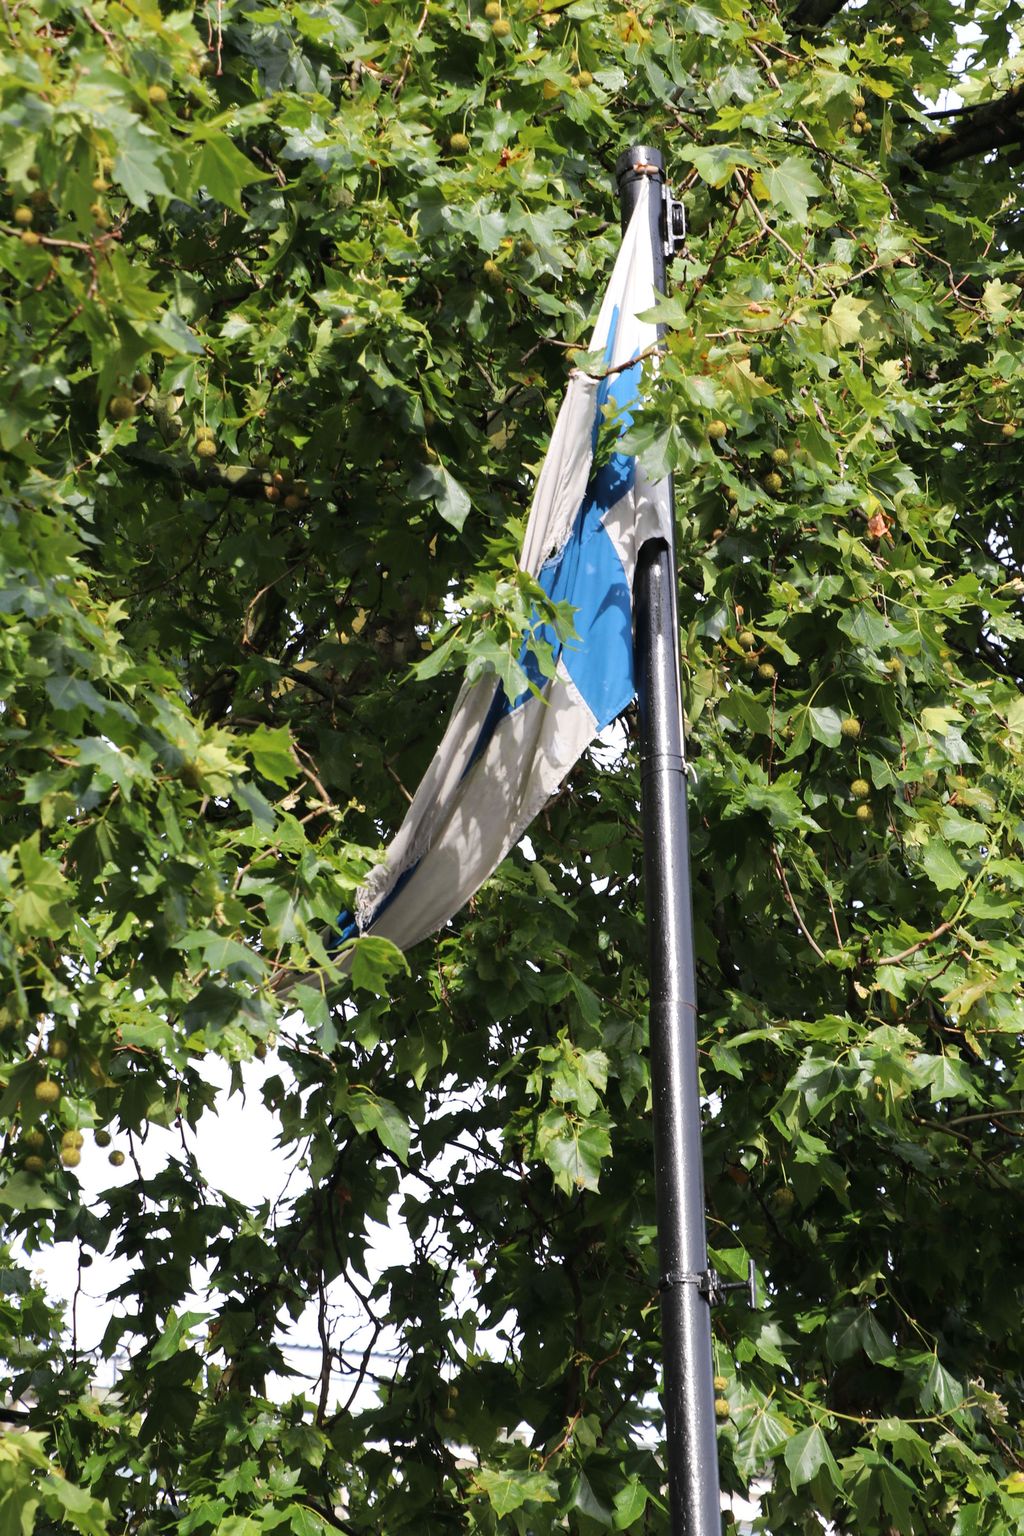 Suomen lippu roikkuu Lontoossa keskellä puustoa kuin likainen rätti – Suomen suurlähetystö vaatii toimia Westminsterin puisto-osastolta